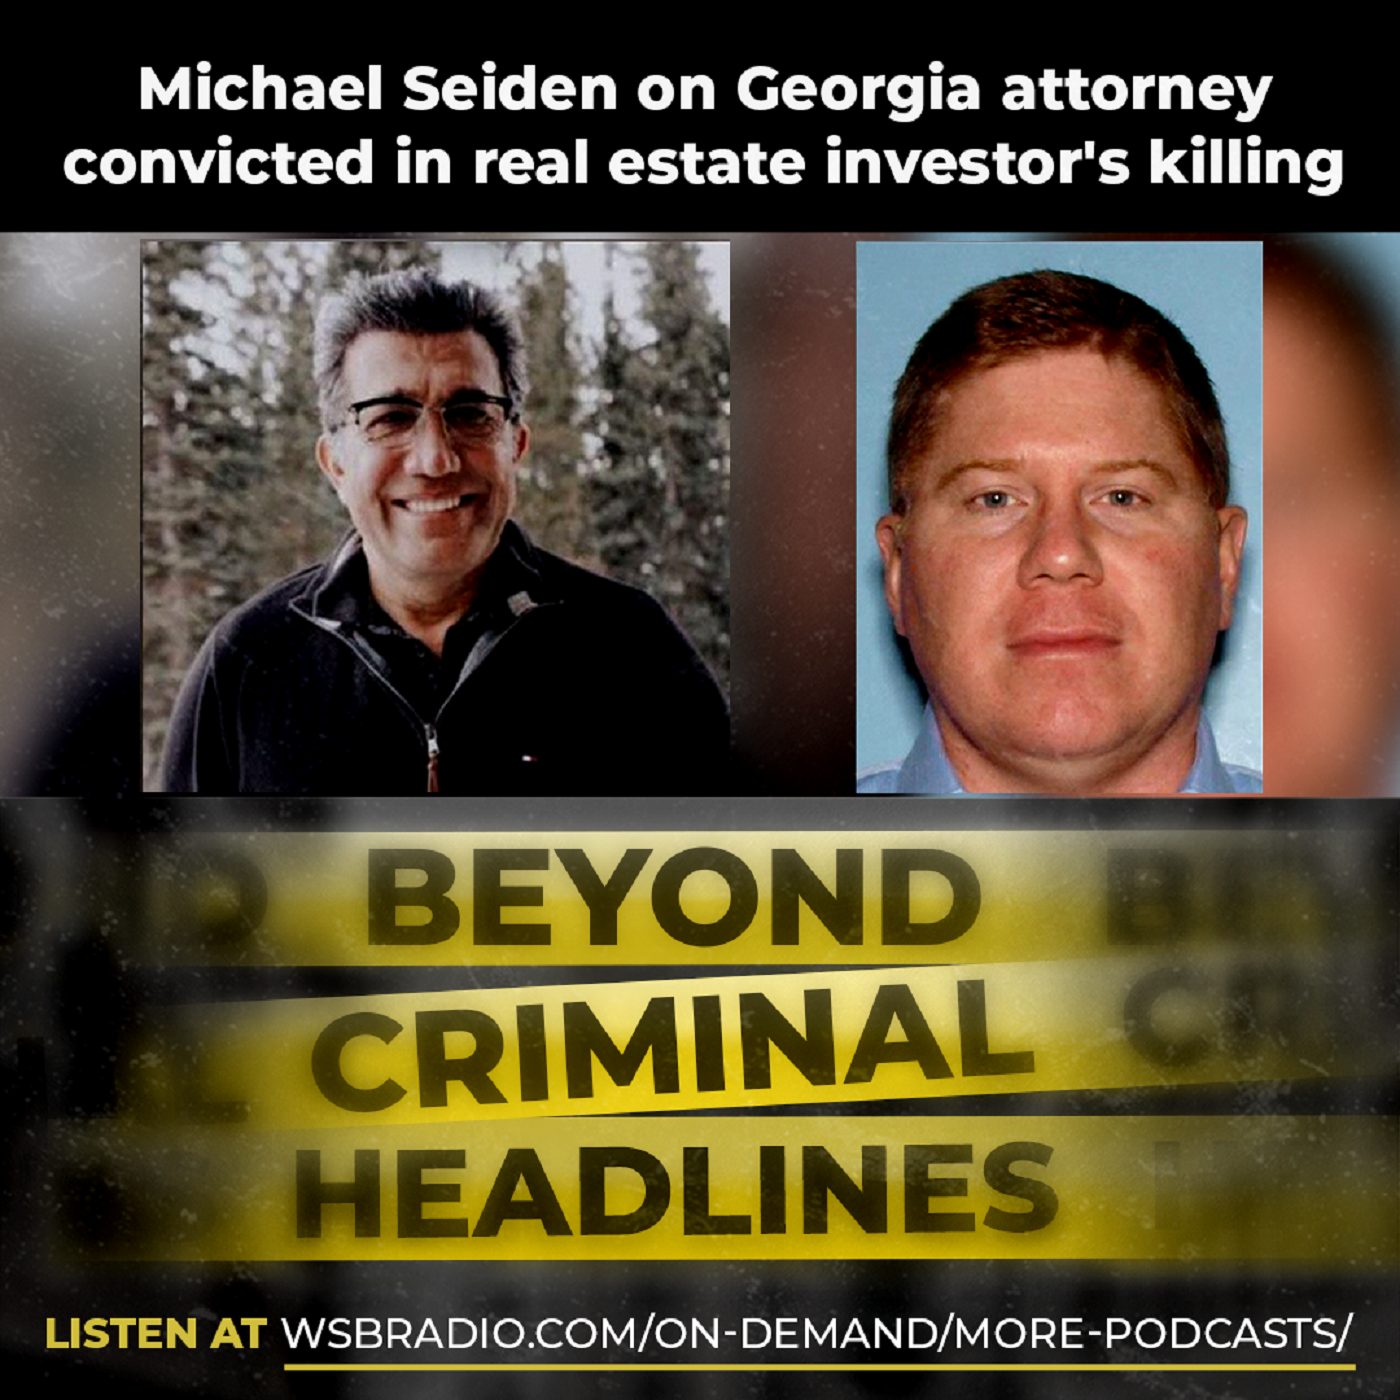 Michael Seiden on Georgia attorney convicted in real estate investor's killing